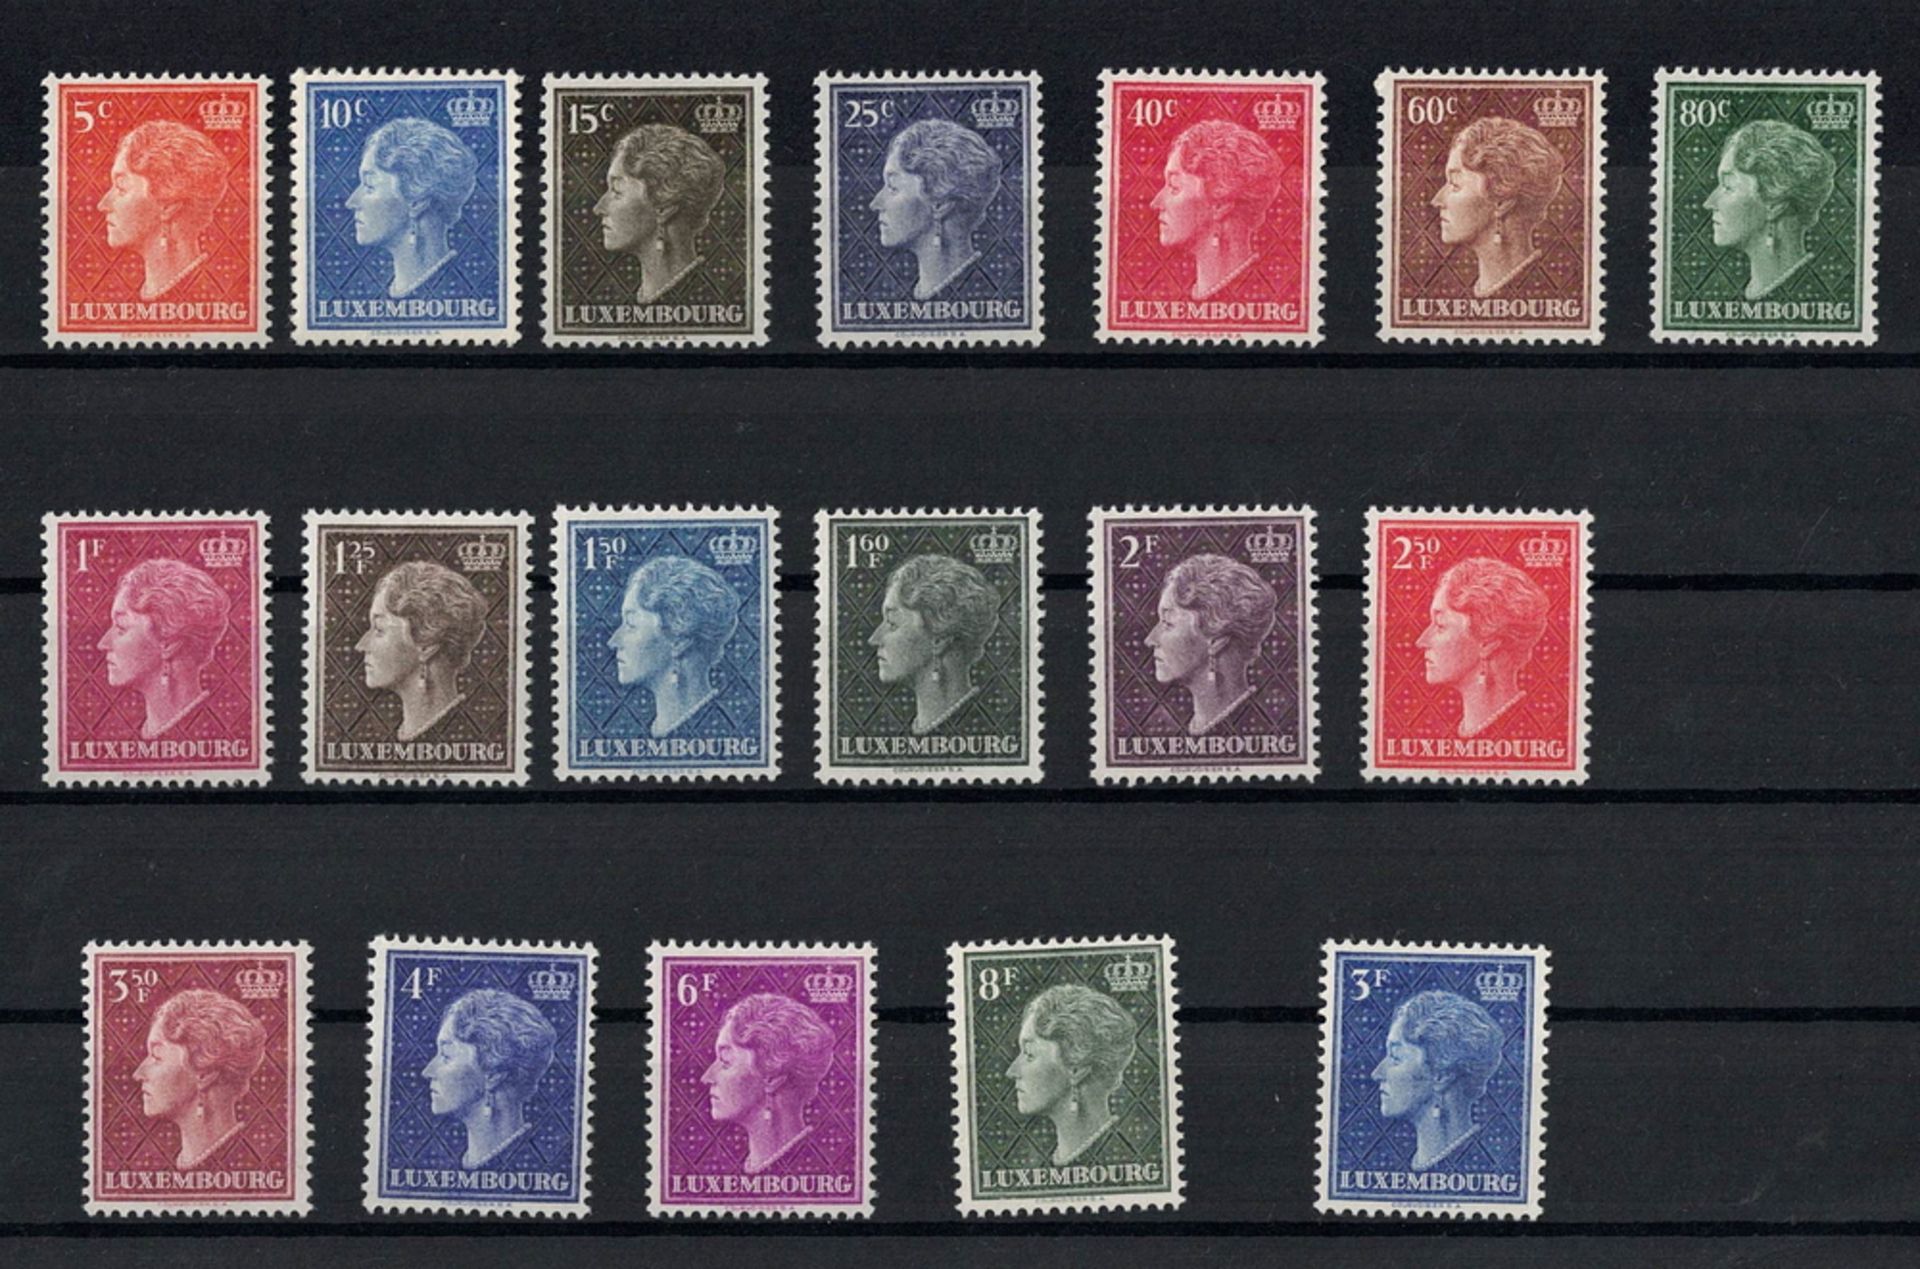 Luxemburg 1948/1951. MiNr. 442-459, postfrisch.